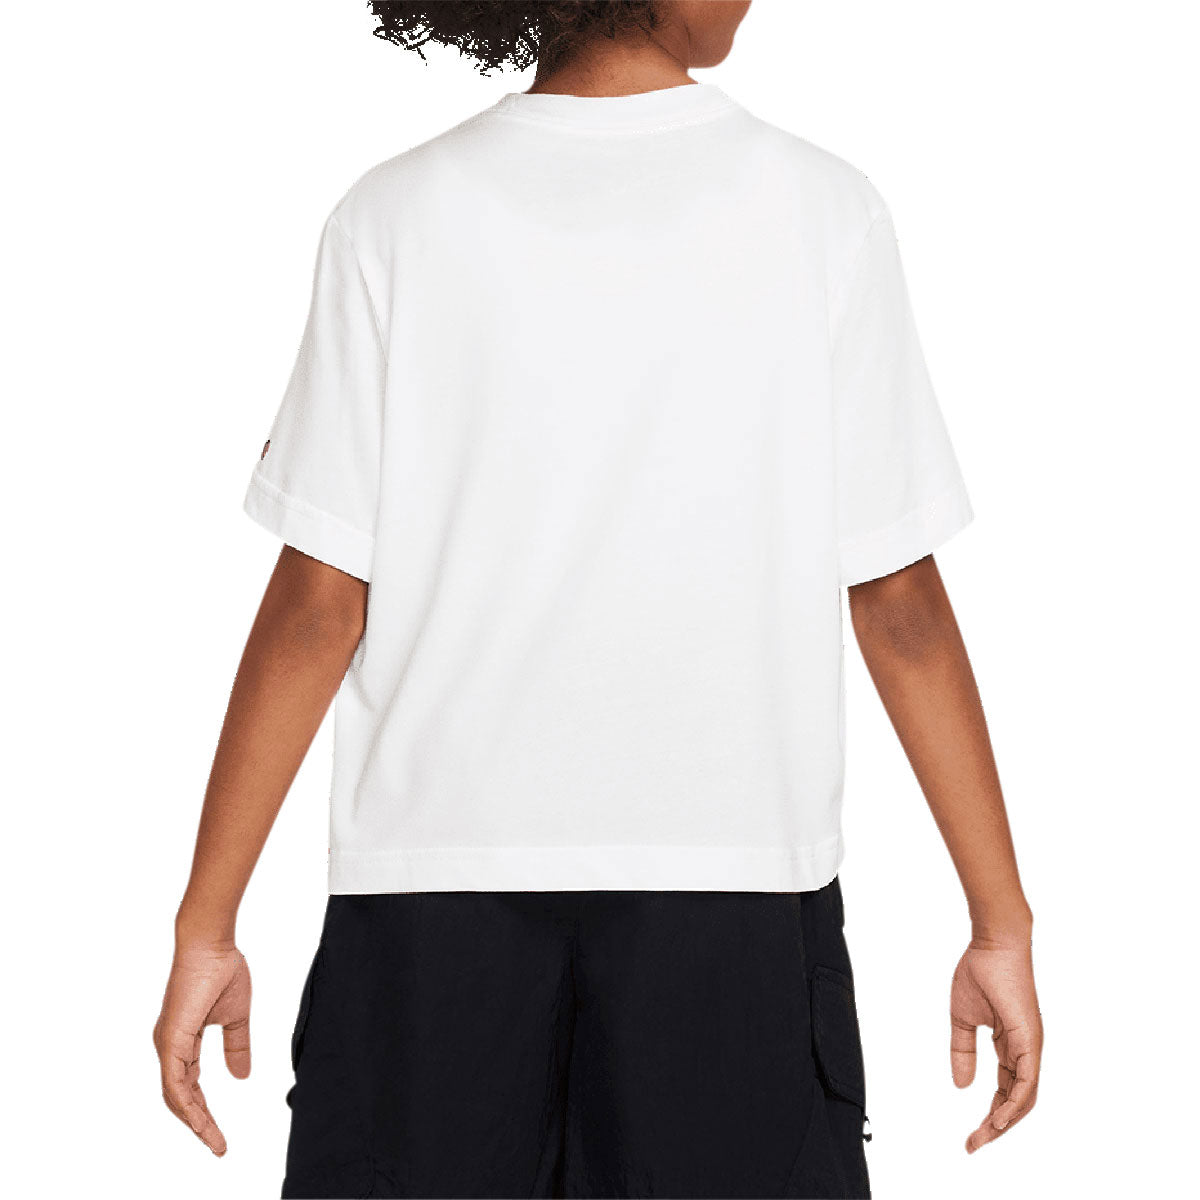 Nike SB Womens x Rayssa Leal T-Shirt - White image 3